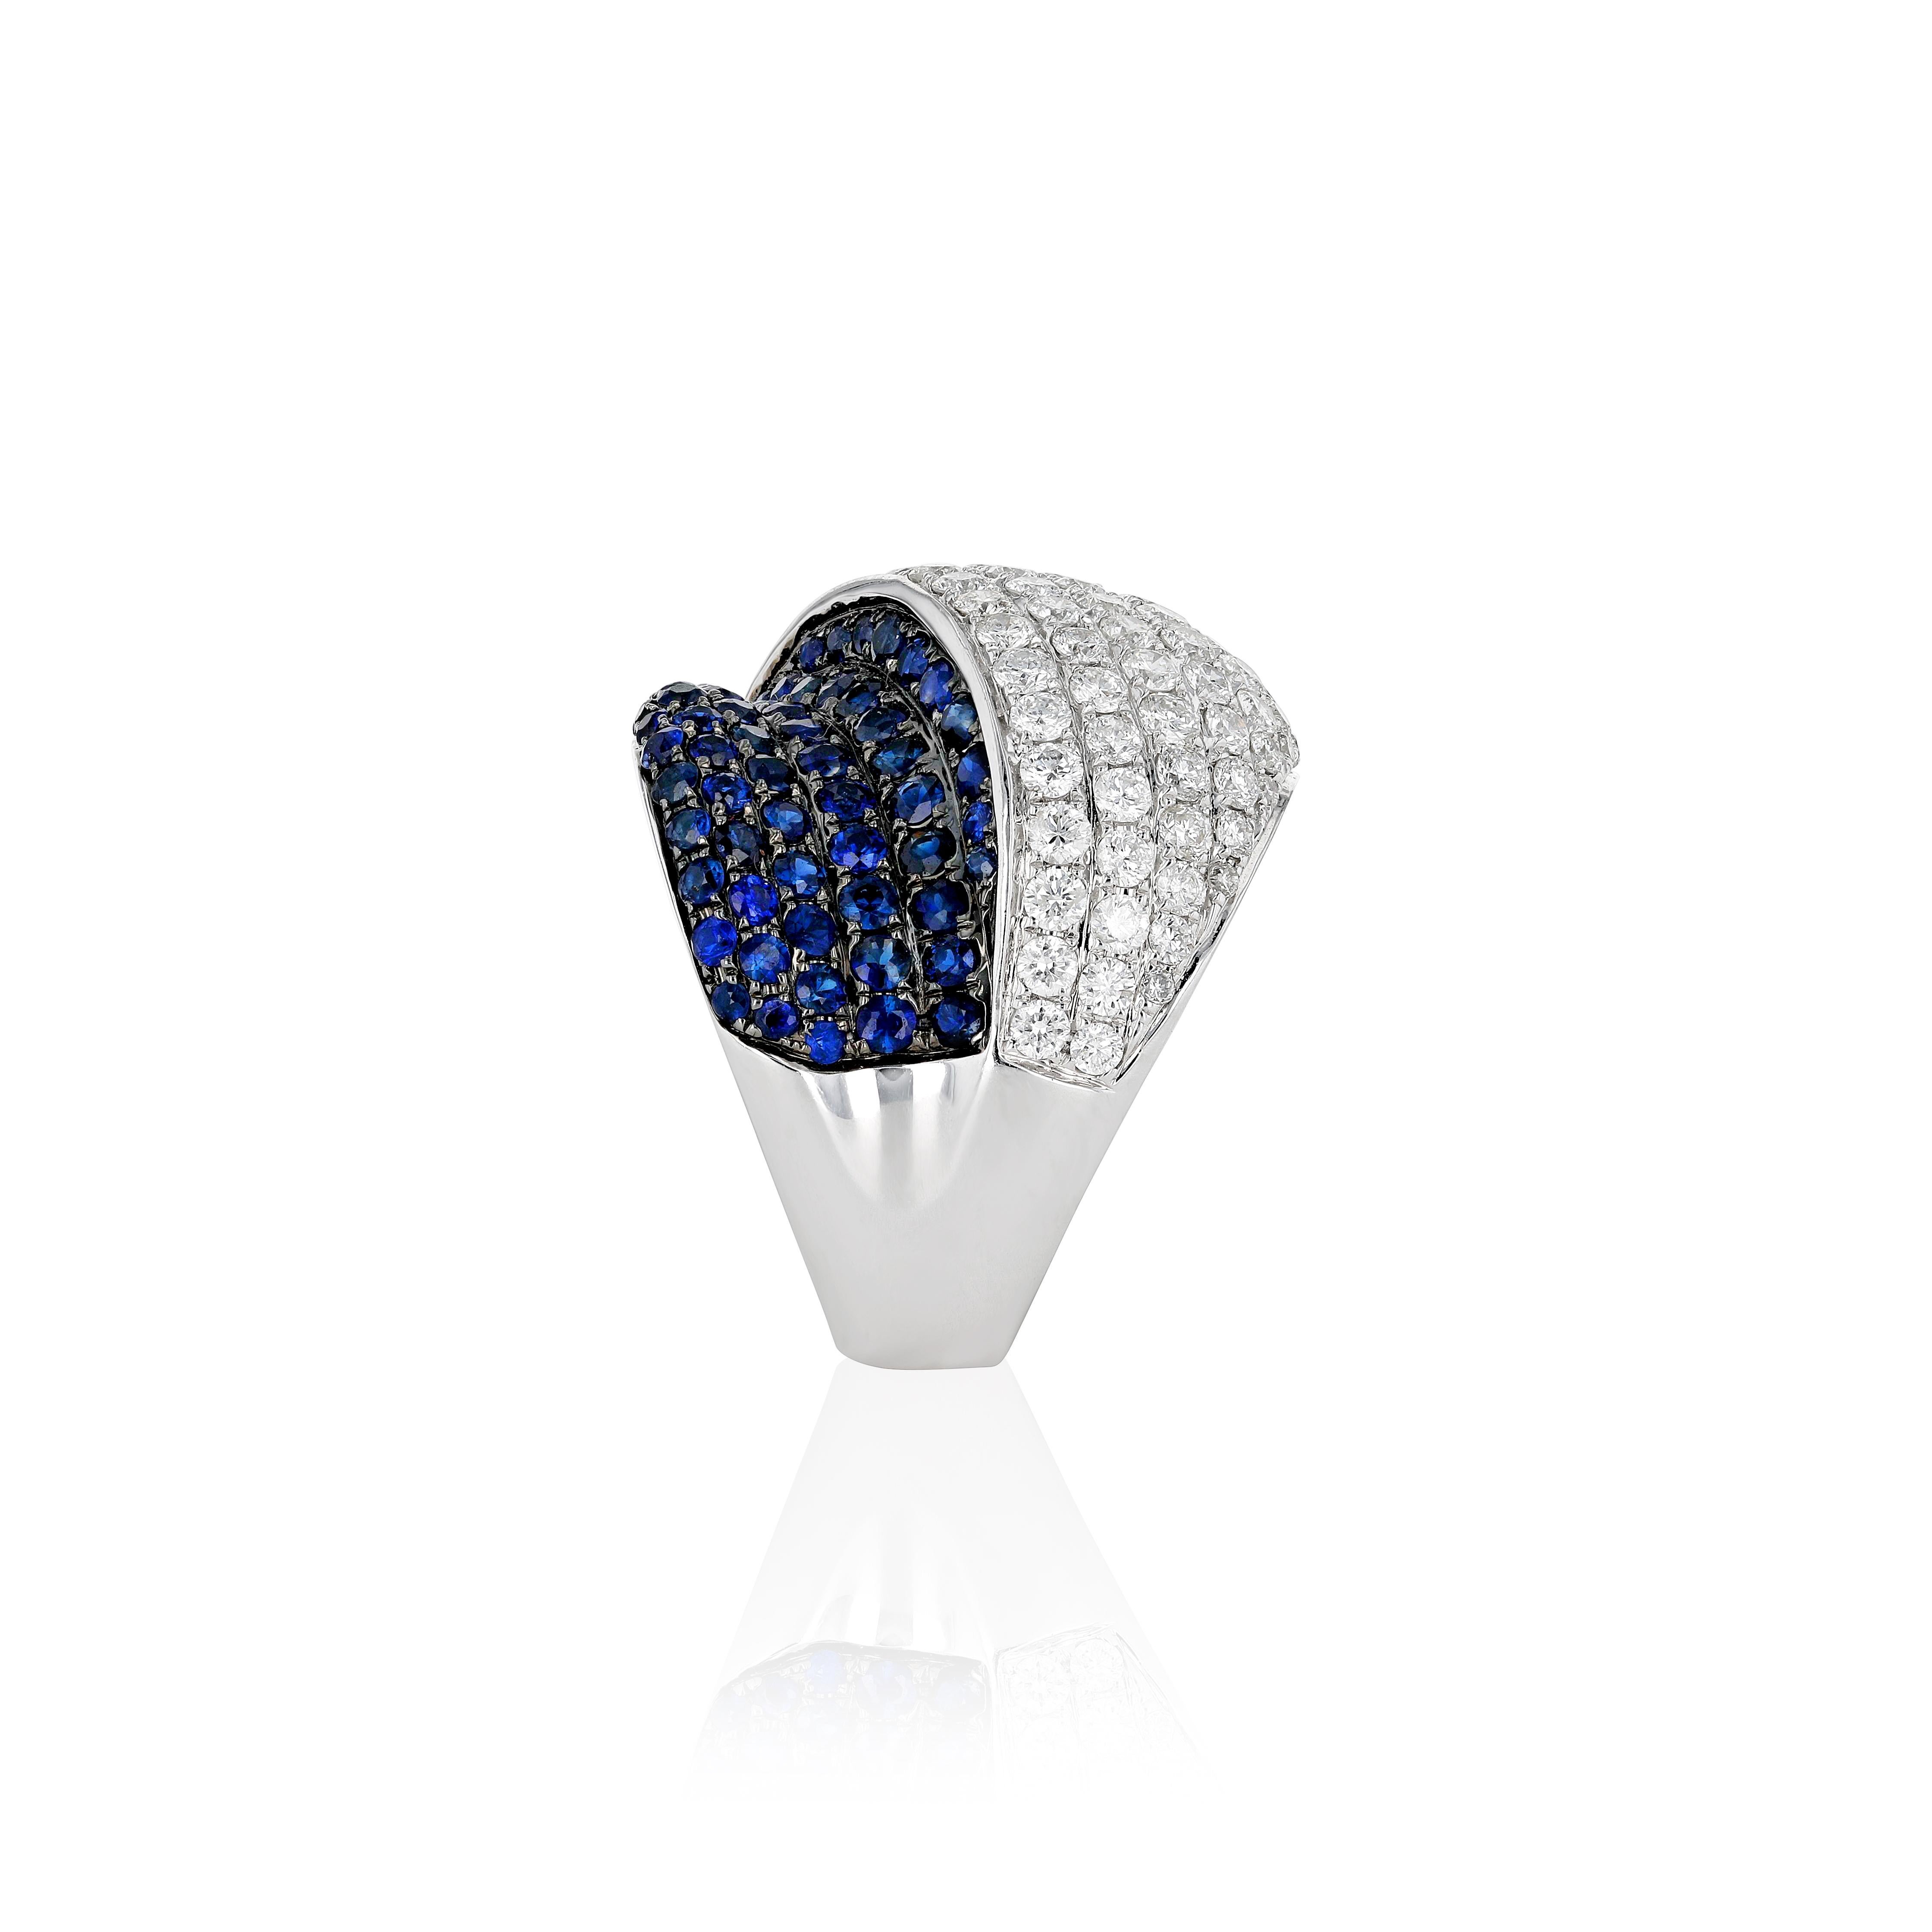 La beauté incomparable des saphirs bleus, qui présentent une teinte bleue riche et intense, est incorporée dans cette bague de classe intemporelle d'Amwaj Jewelry. Serti d'un magnifique saphir rond de 1,64 ct, le diamant de taille ronde dirige le